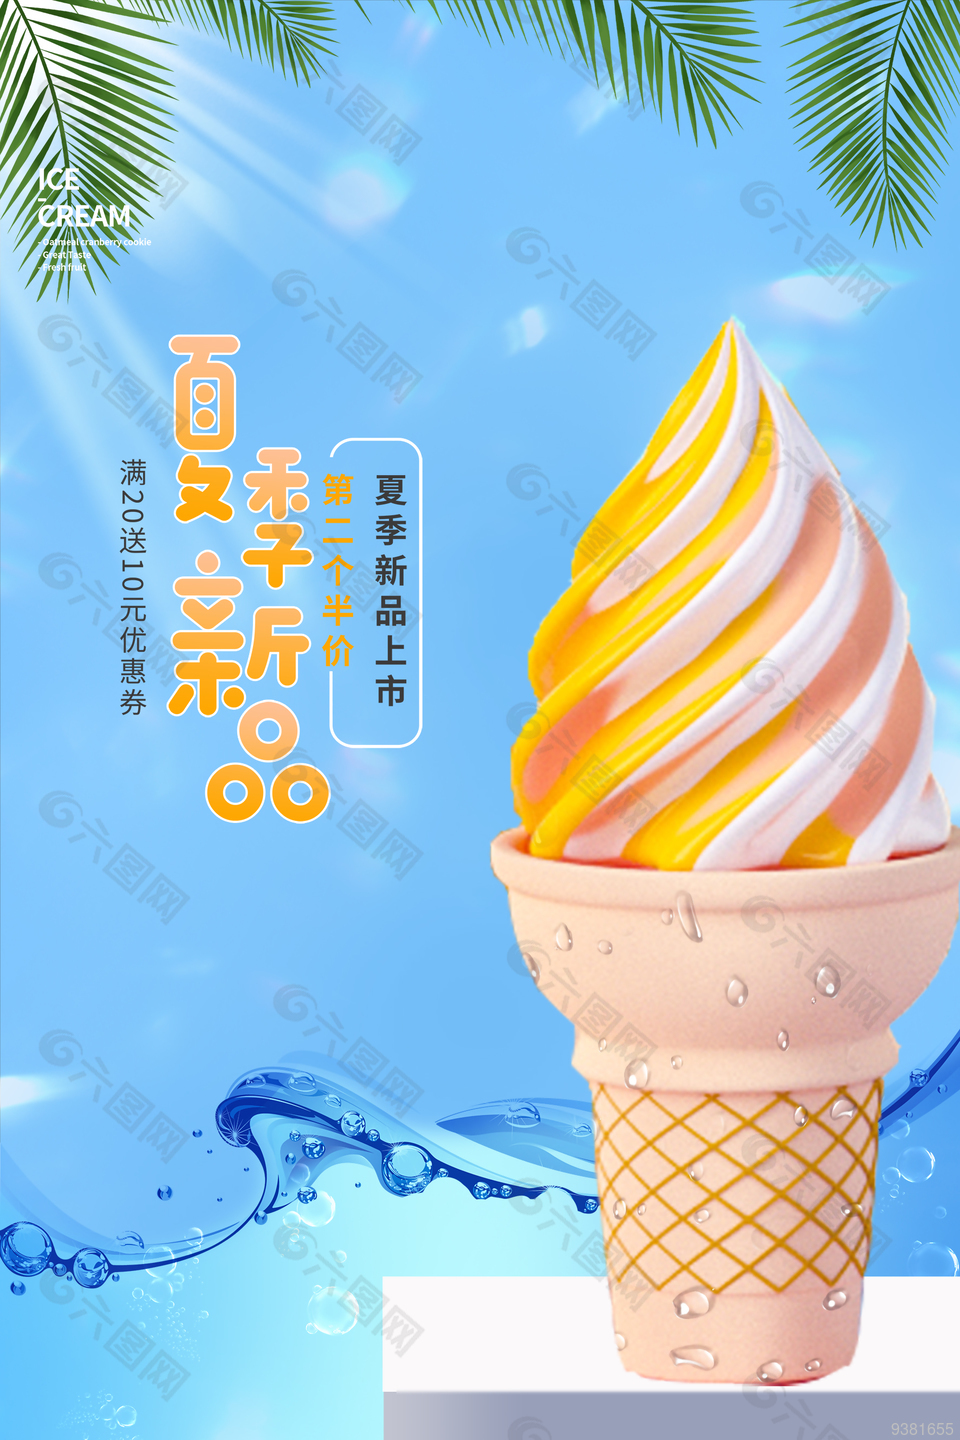 夏季新品冰淇凌海报设计